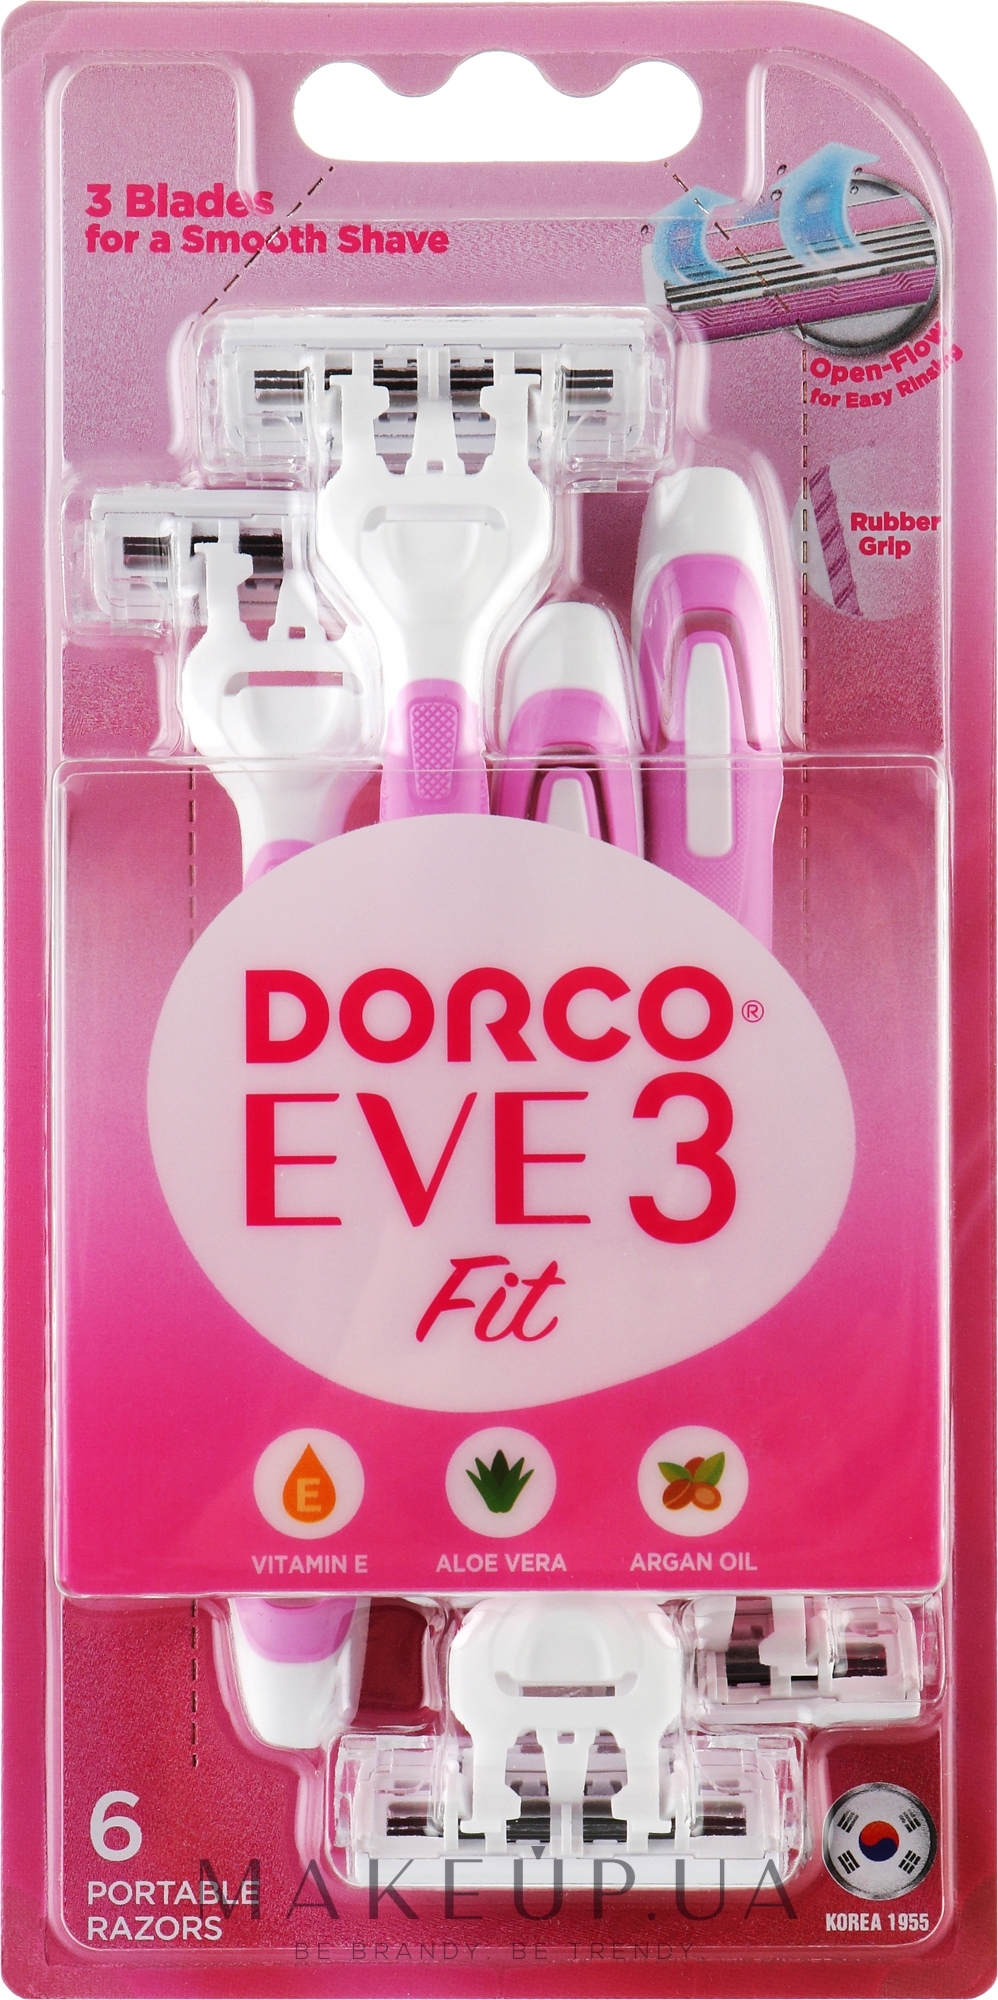 Женские одноразовые бритвы с 3 бритвенными лезвиями, блистер - Dorco Eve3 Fit — фото 6шт